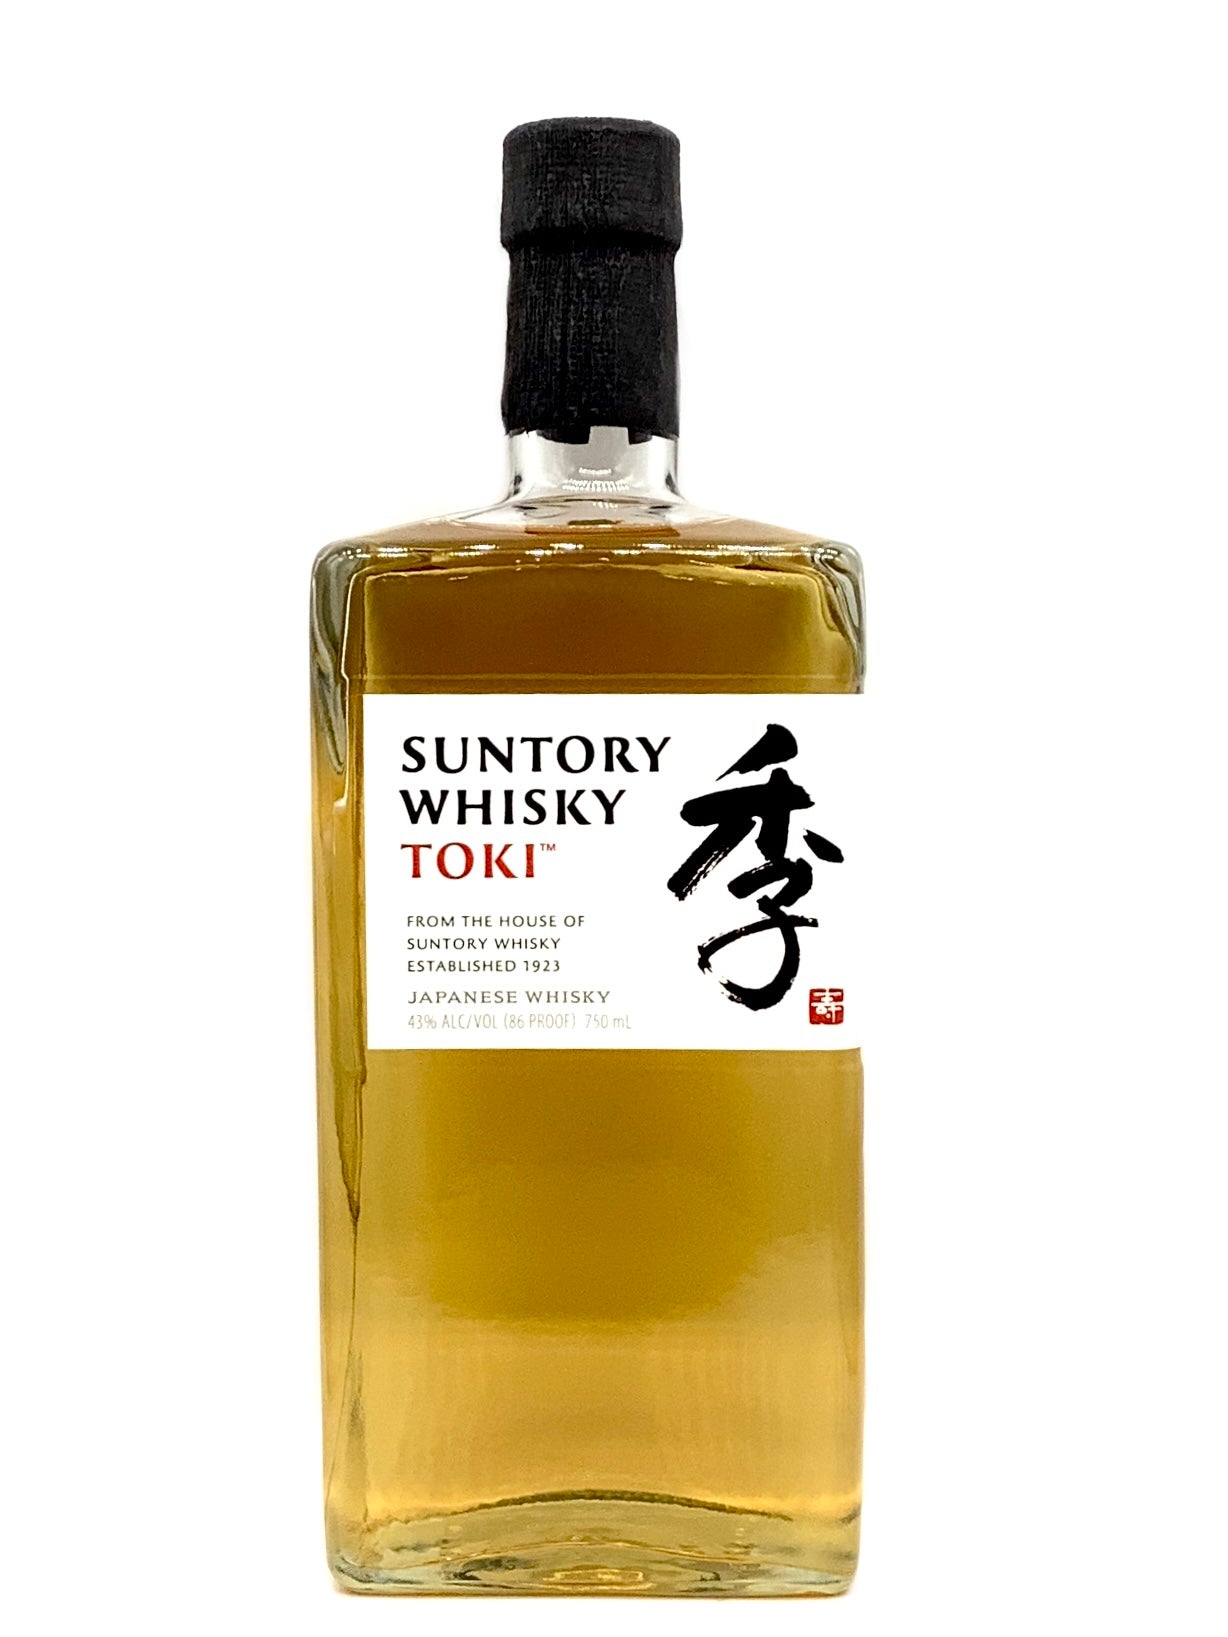 Whisky Japonais Toki Suntory Blended